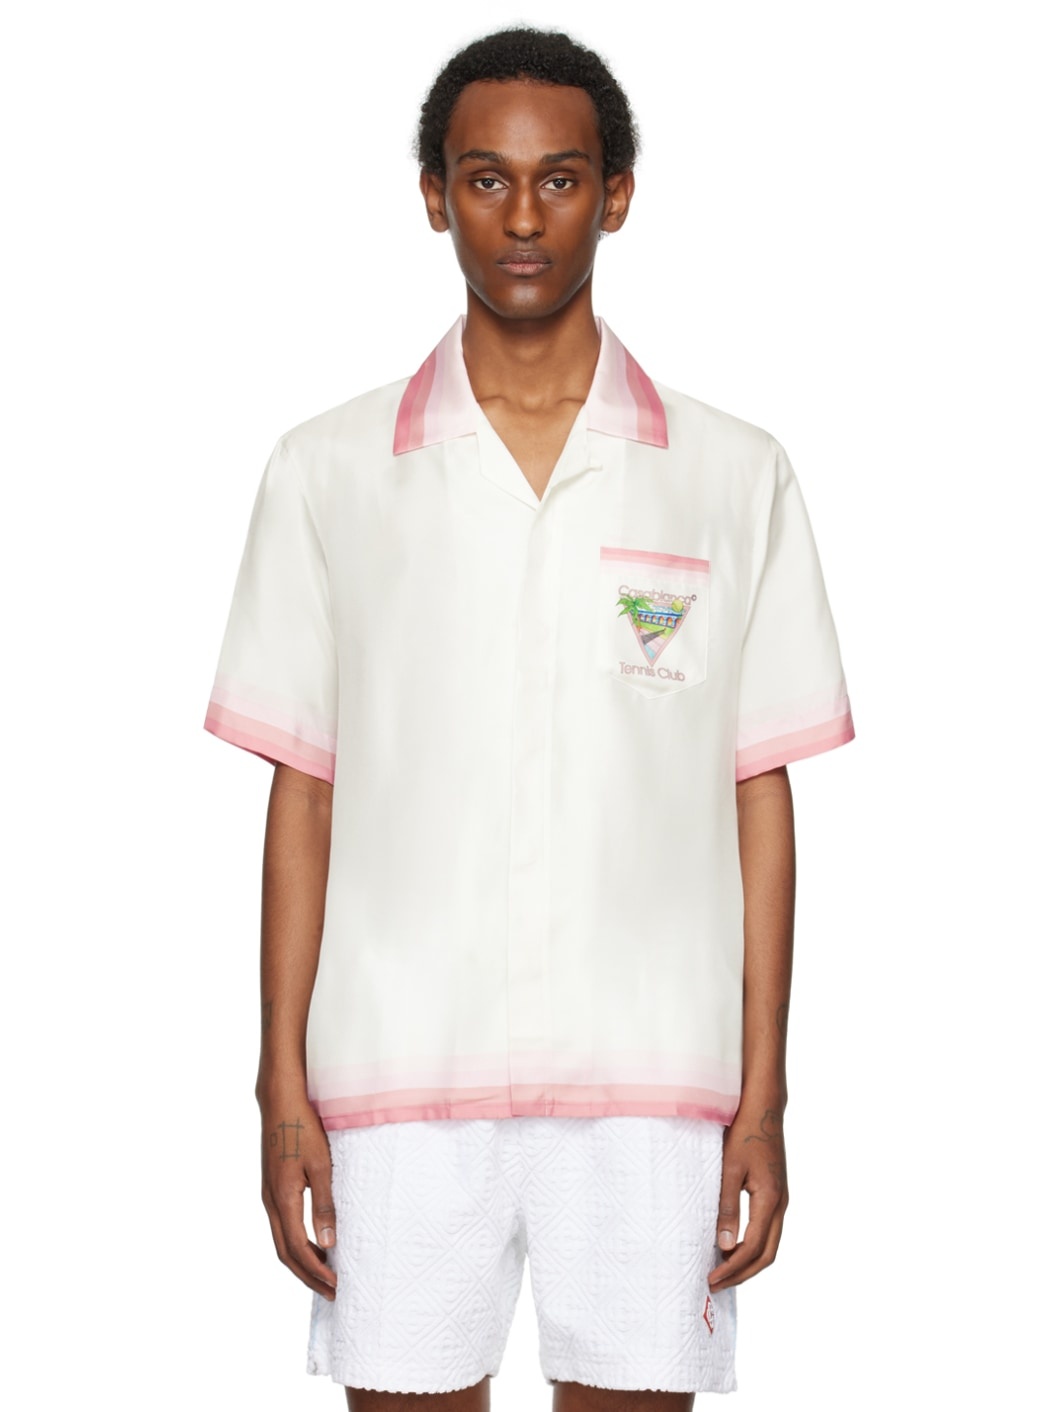 White & Pink 'Tennis Club' Icon Shirt - 1